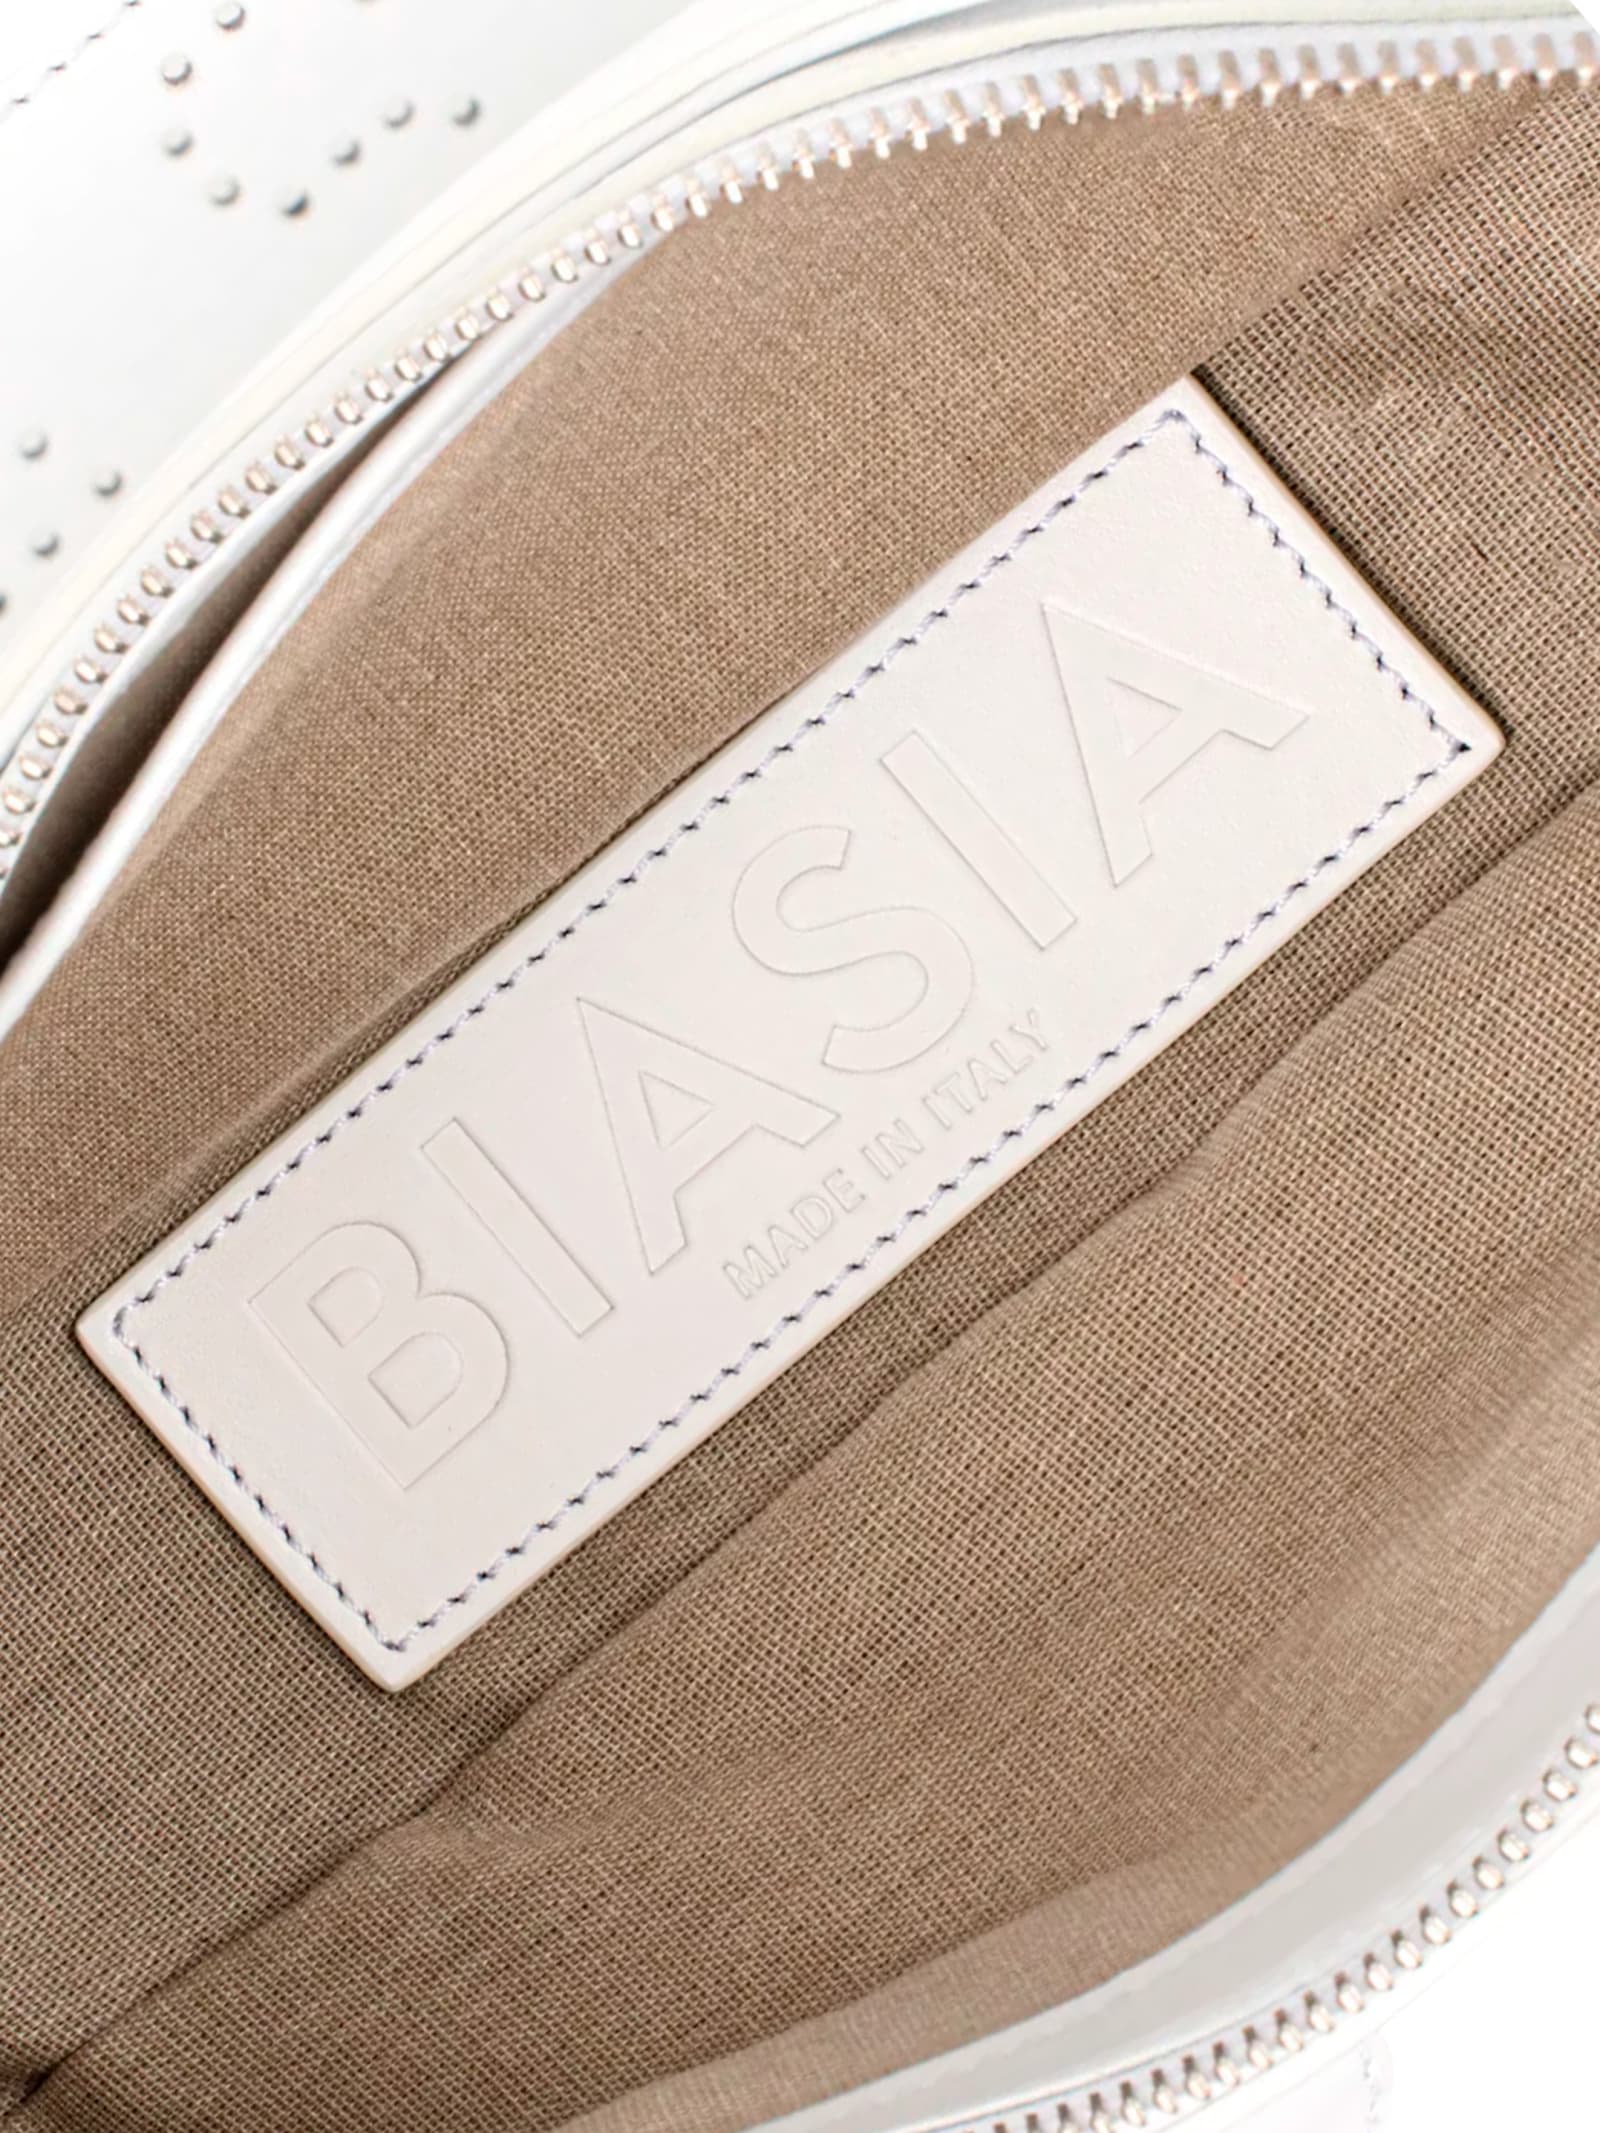 Shop Biasia Shoulder Bag Y2k.001 In White